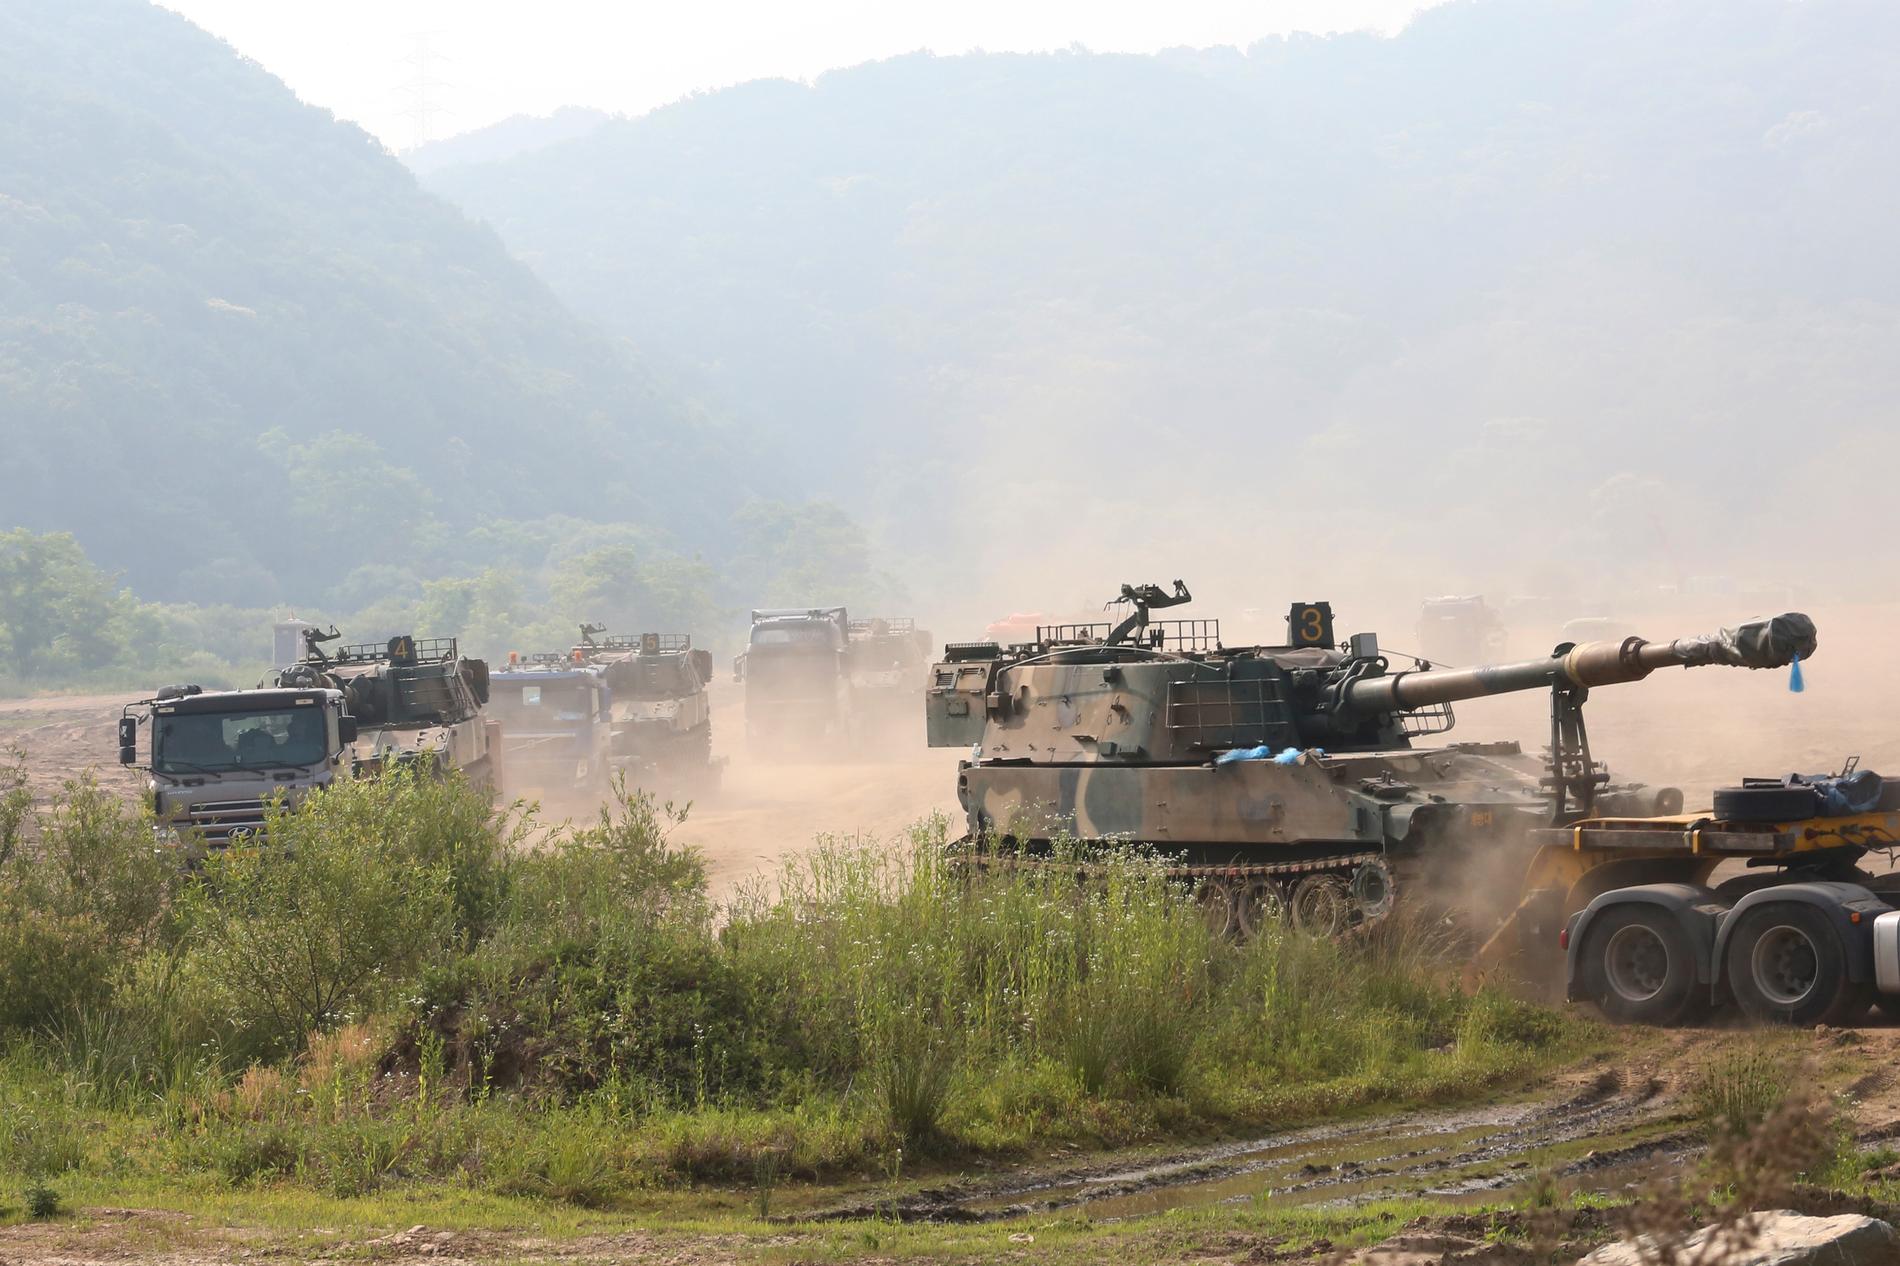 Sydkoreanska haubitsar som flyttas till ställningar vid Paju, nära gränsen till Nordkorea.